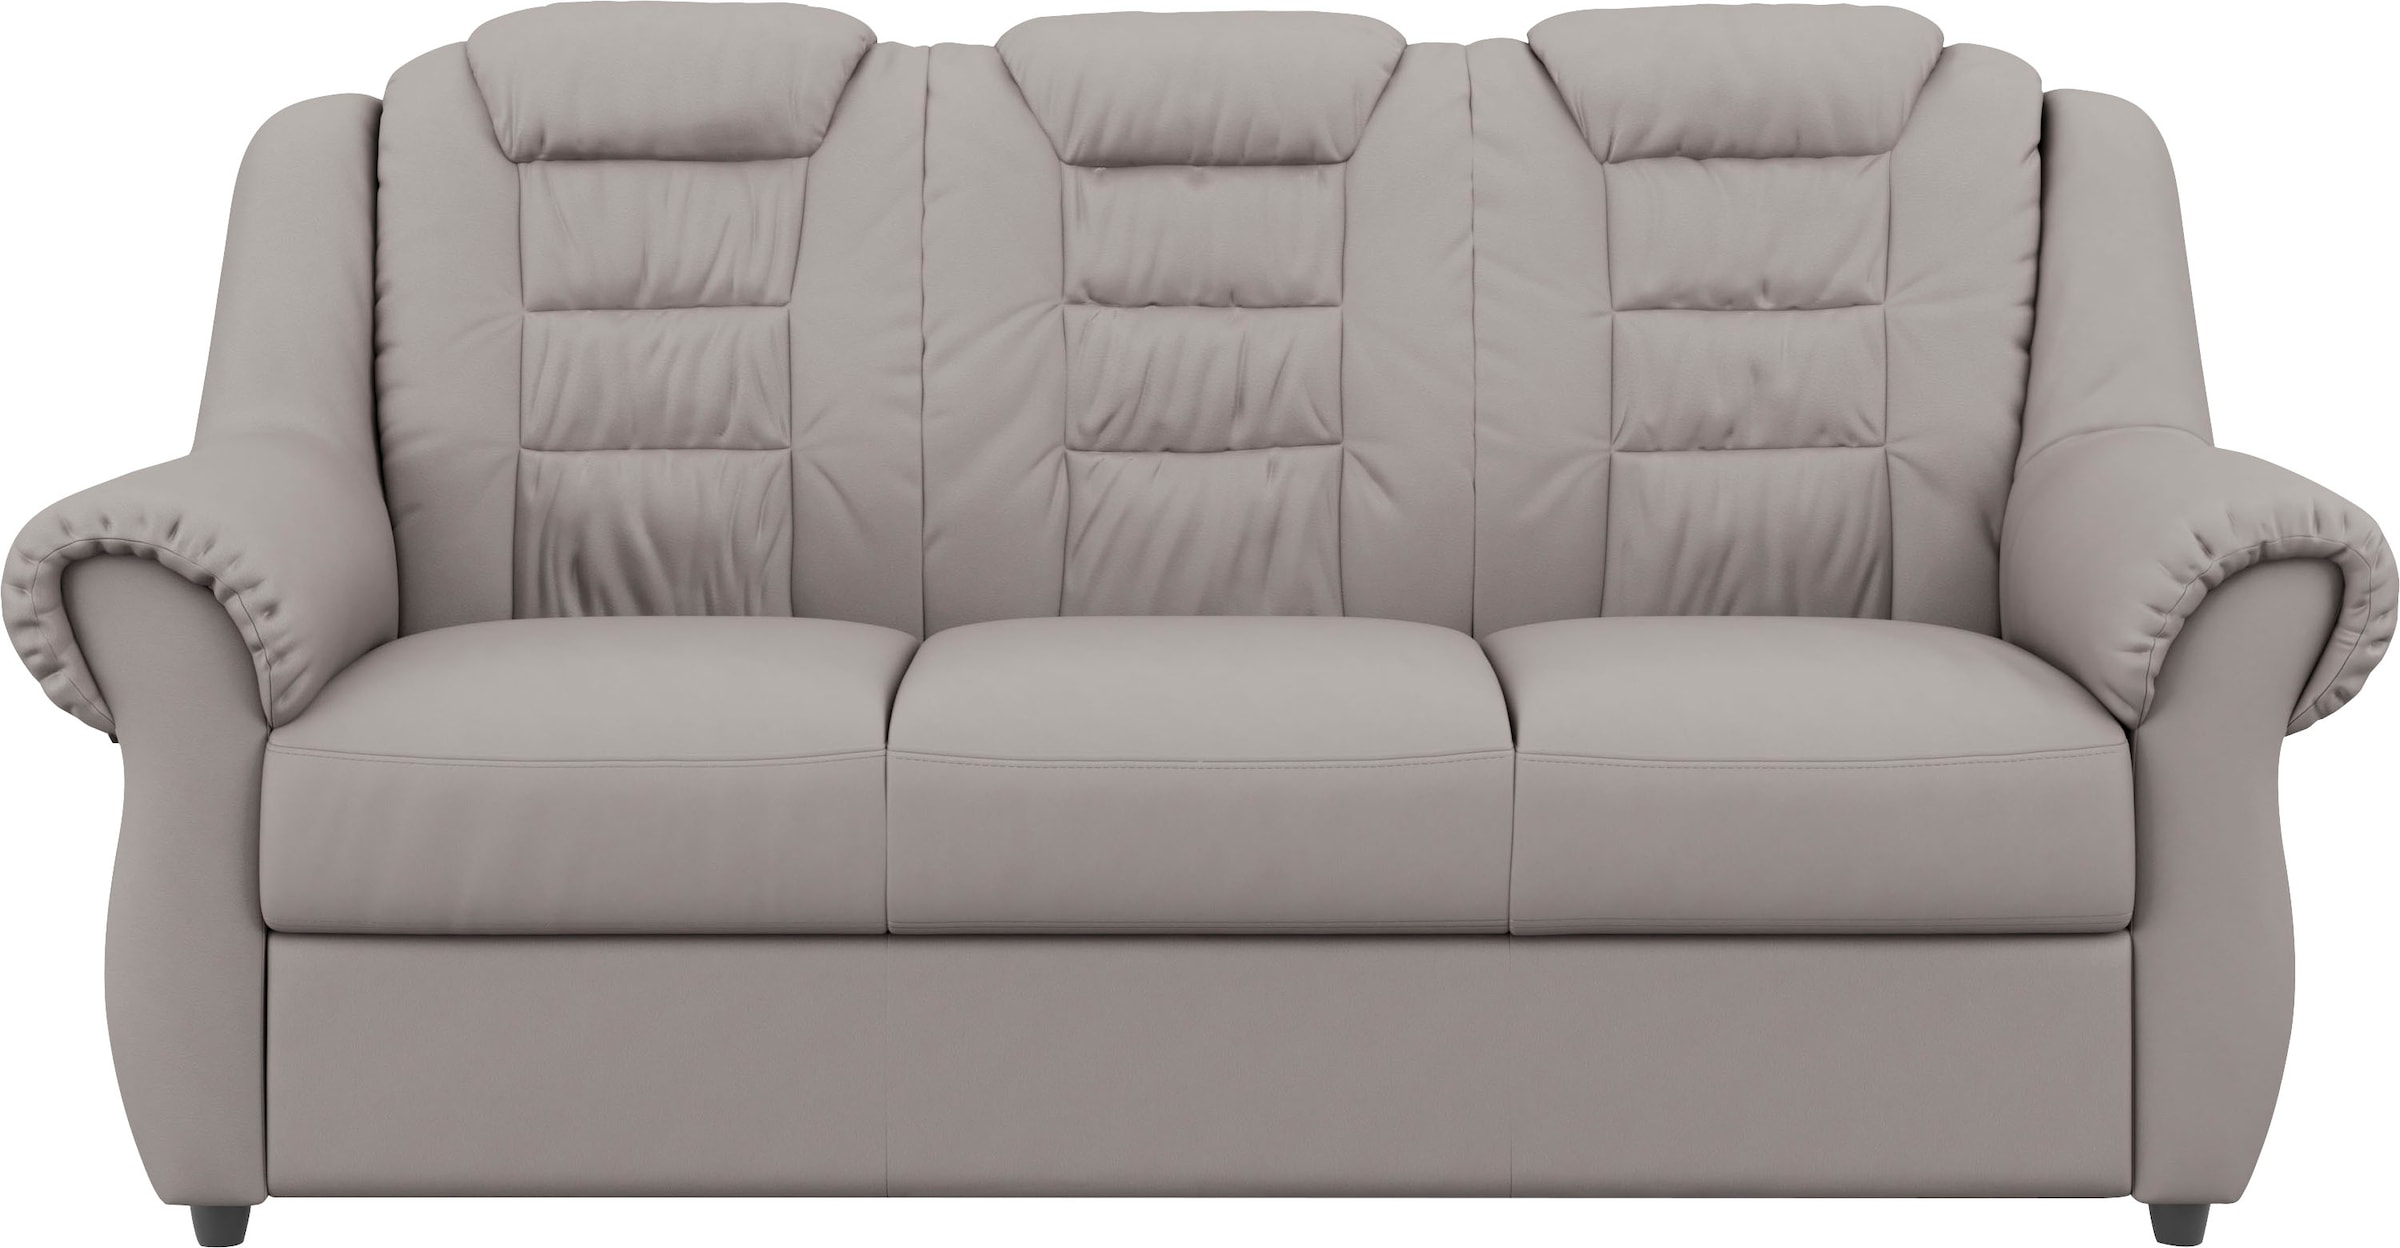 Home affaire 3-Sitzer »Boston«, Gemütlicher 3-Sitzer mit hoher Rückenlehne in klassischem Design